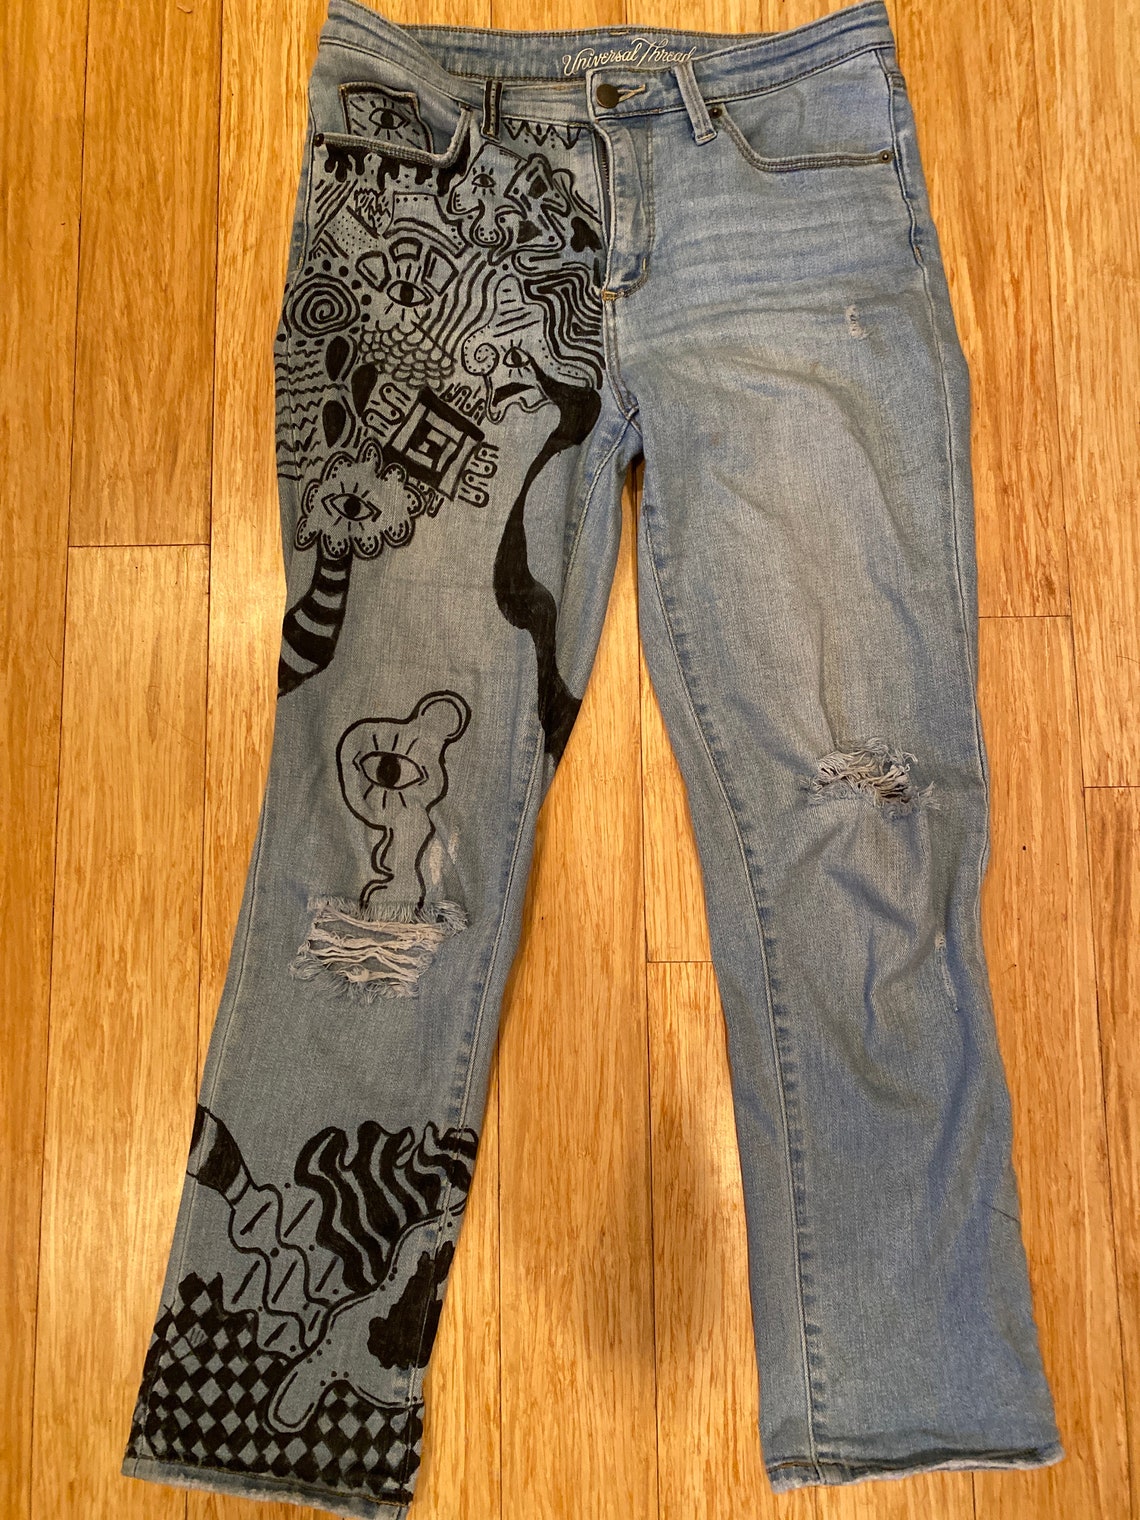 Custom Designed Jeans - Etsy